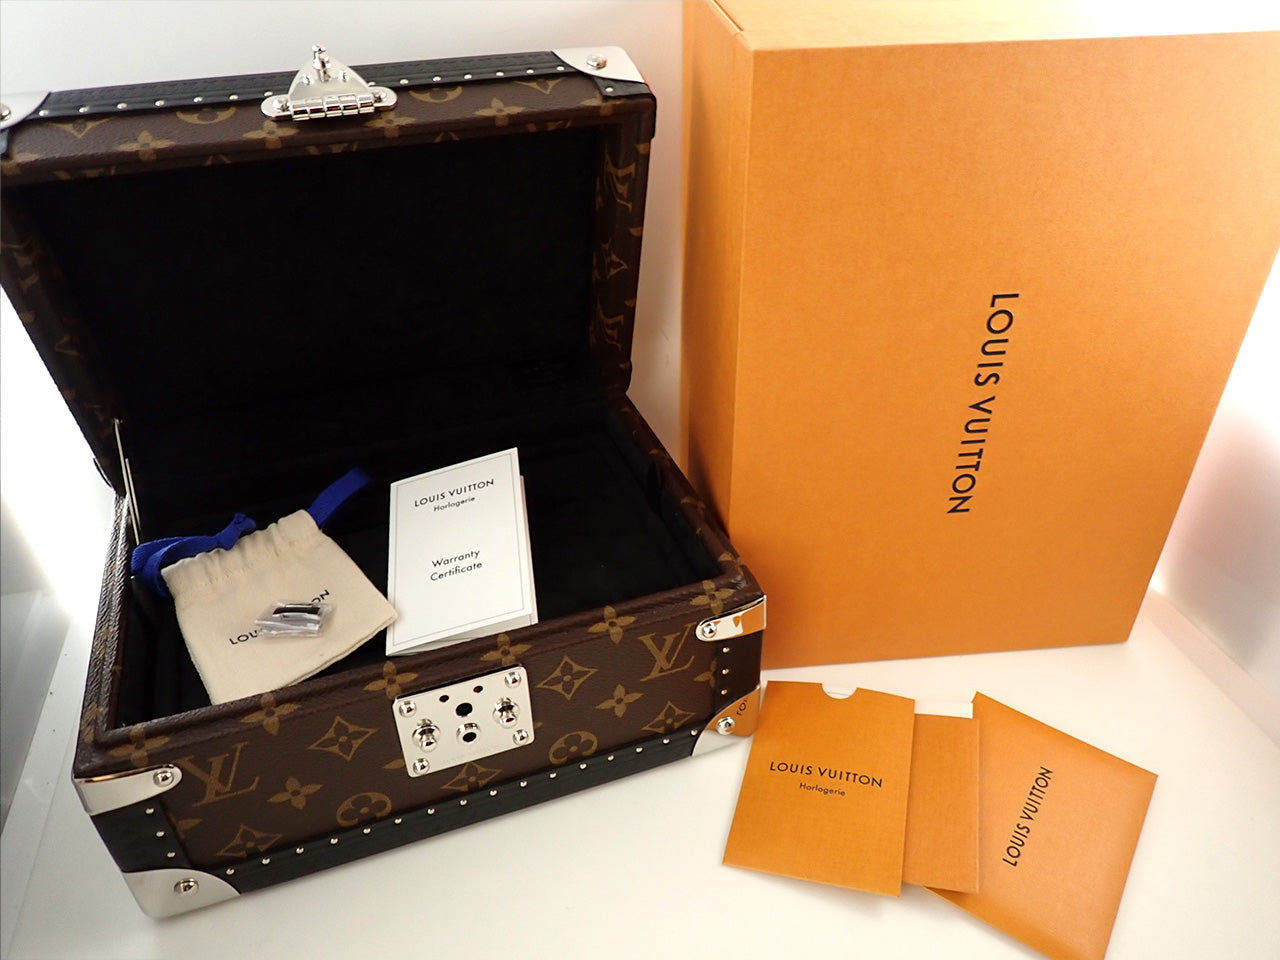 Louis Vuitton Tambour Automatic &lt;Warranty, Box, etc.&gt;